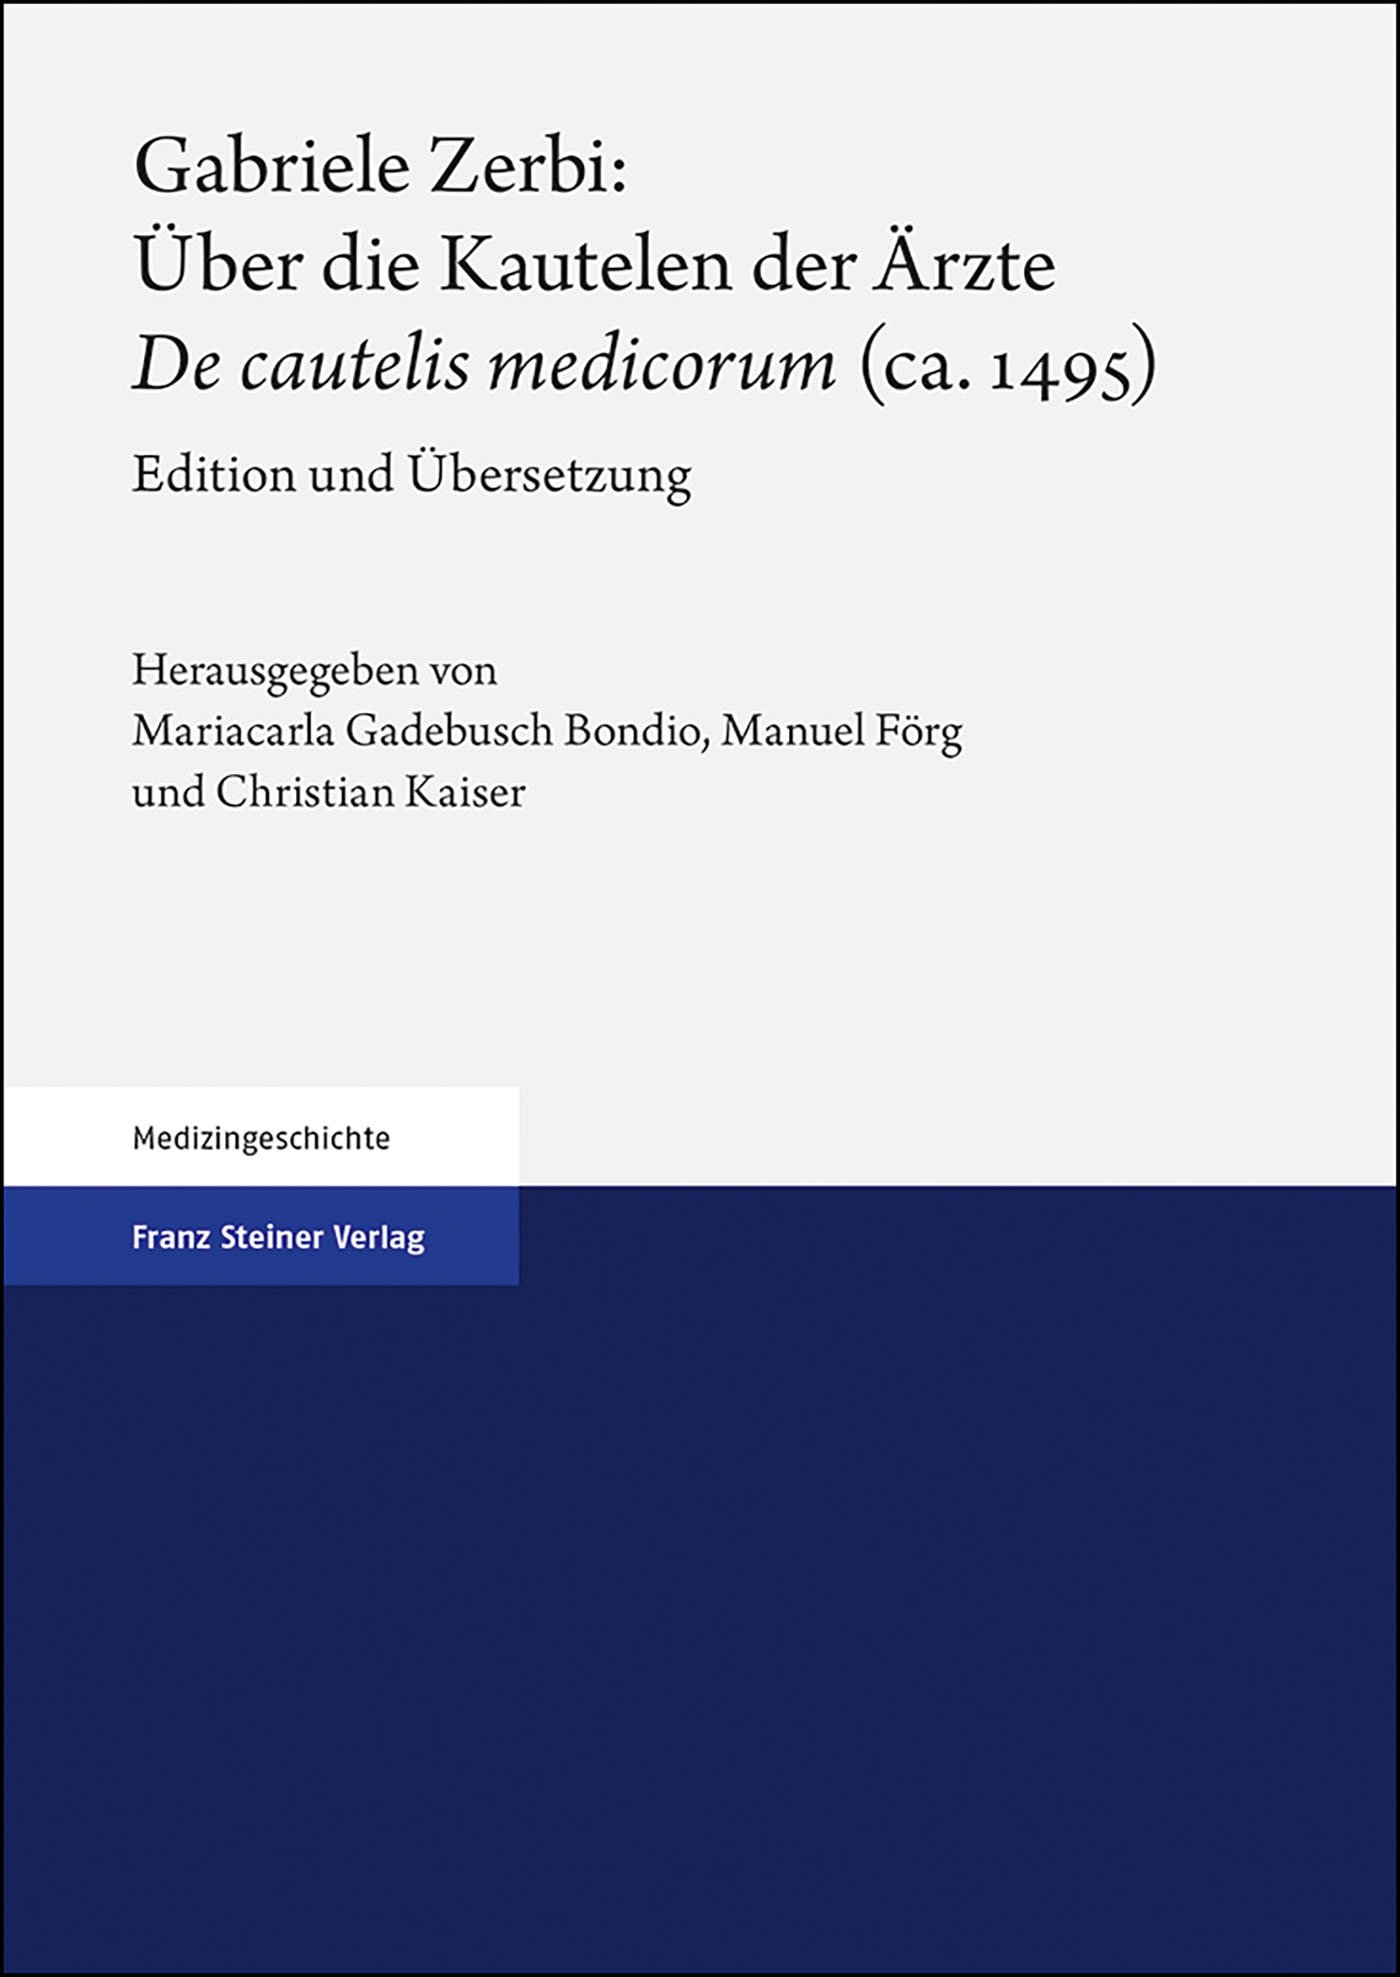 Gabriele Zerbi: Über die Kautelen der Ärzte / "De cautelis medicorum" (ca. 1495)